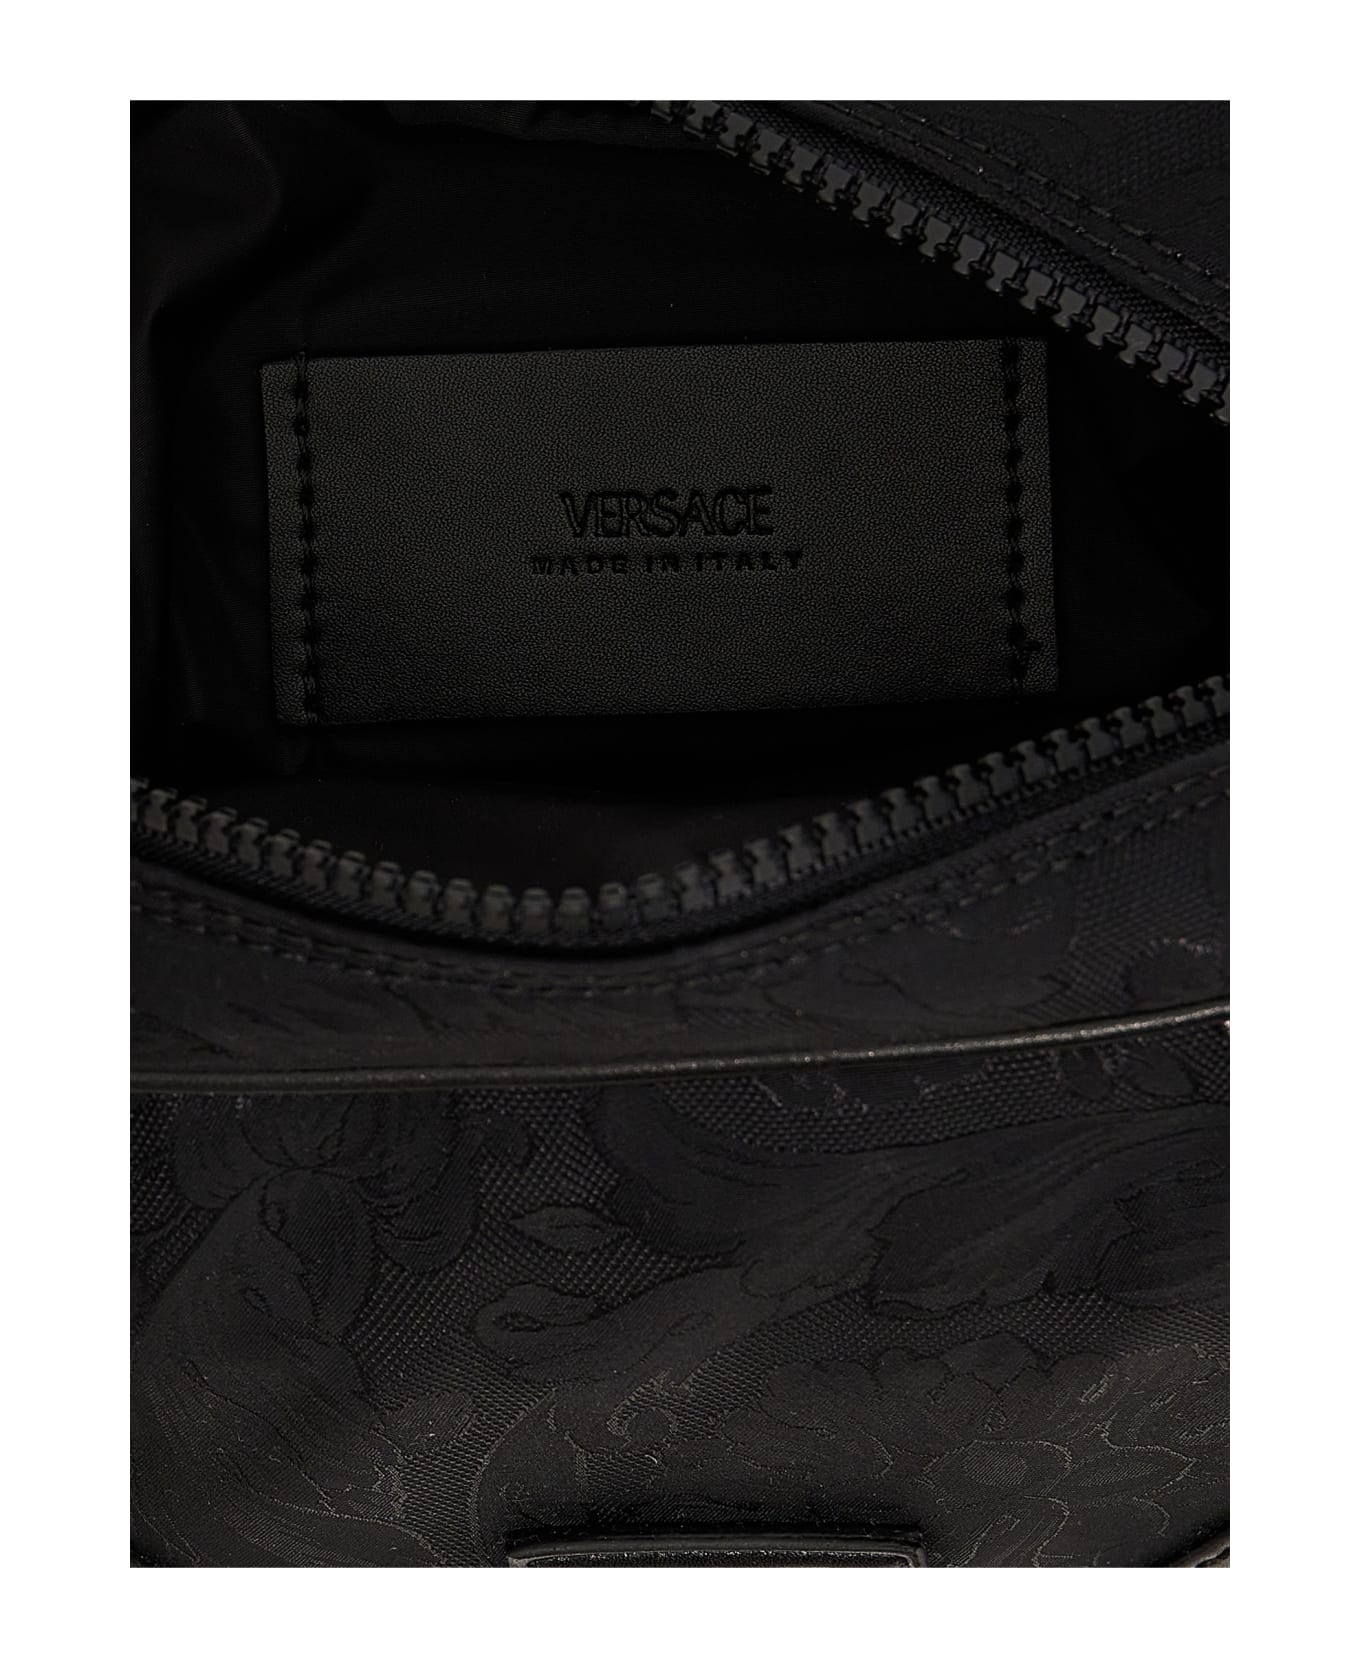 Versace Jacquard Shoulder Strap - Black